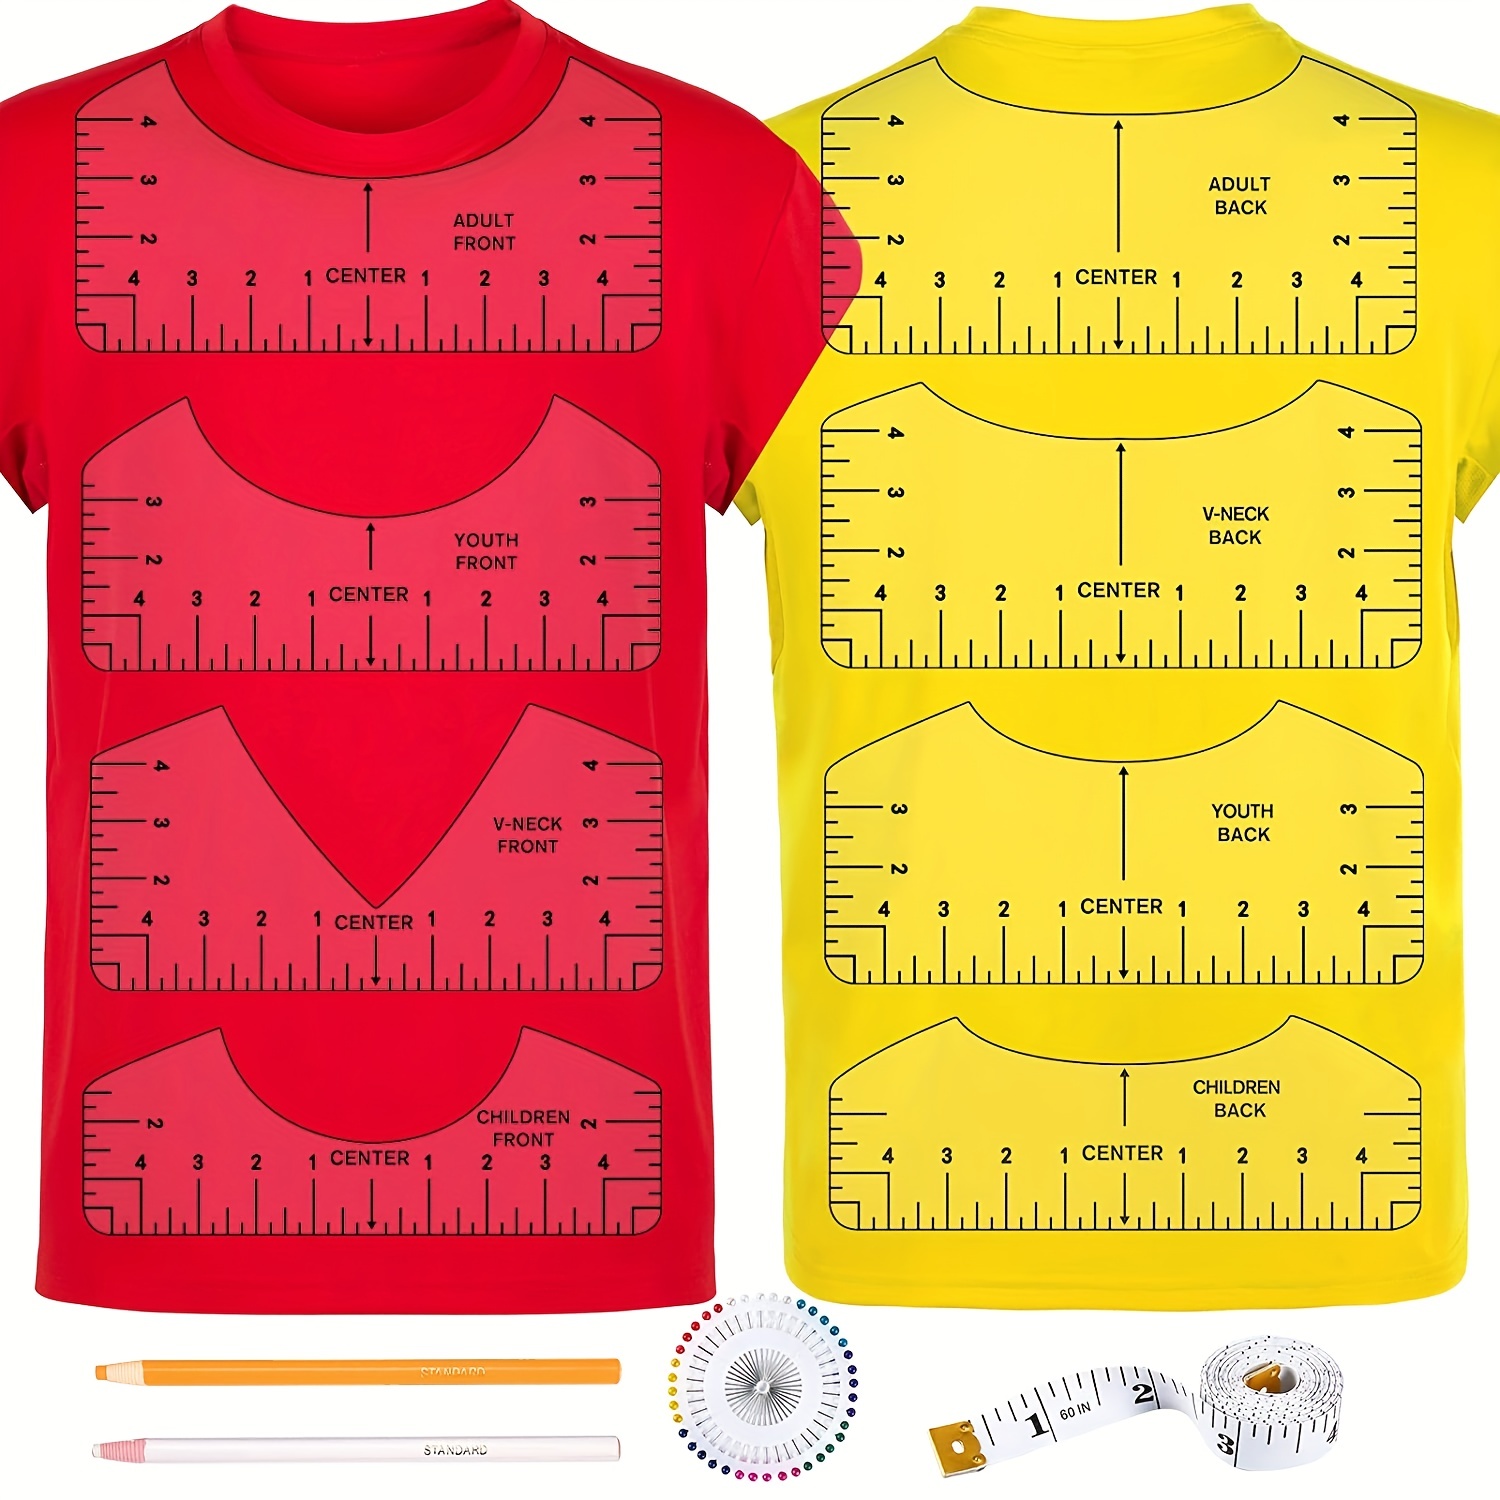 Tshirt Ruler Guide Transparent Ruler Guide For Vinyl Alignment For